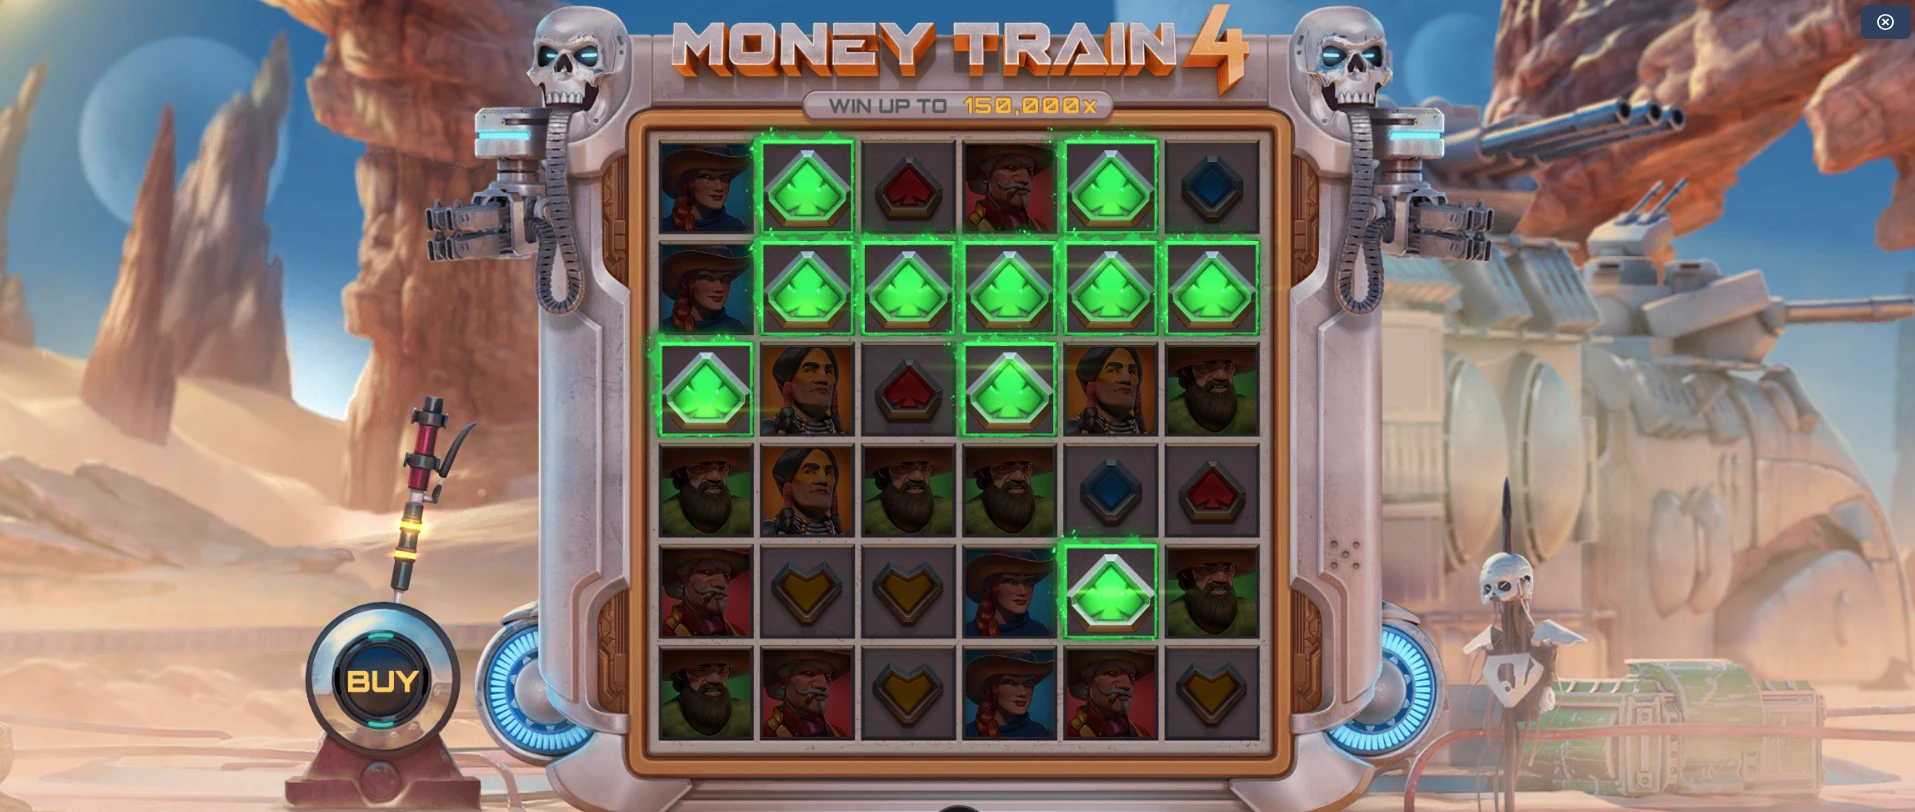 Les connexions sur la machine à sous Money Train 4 sont particulières